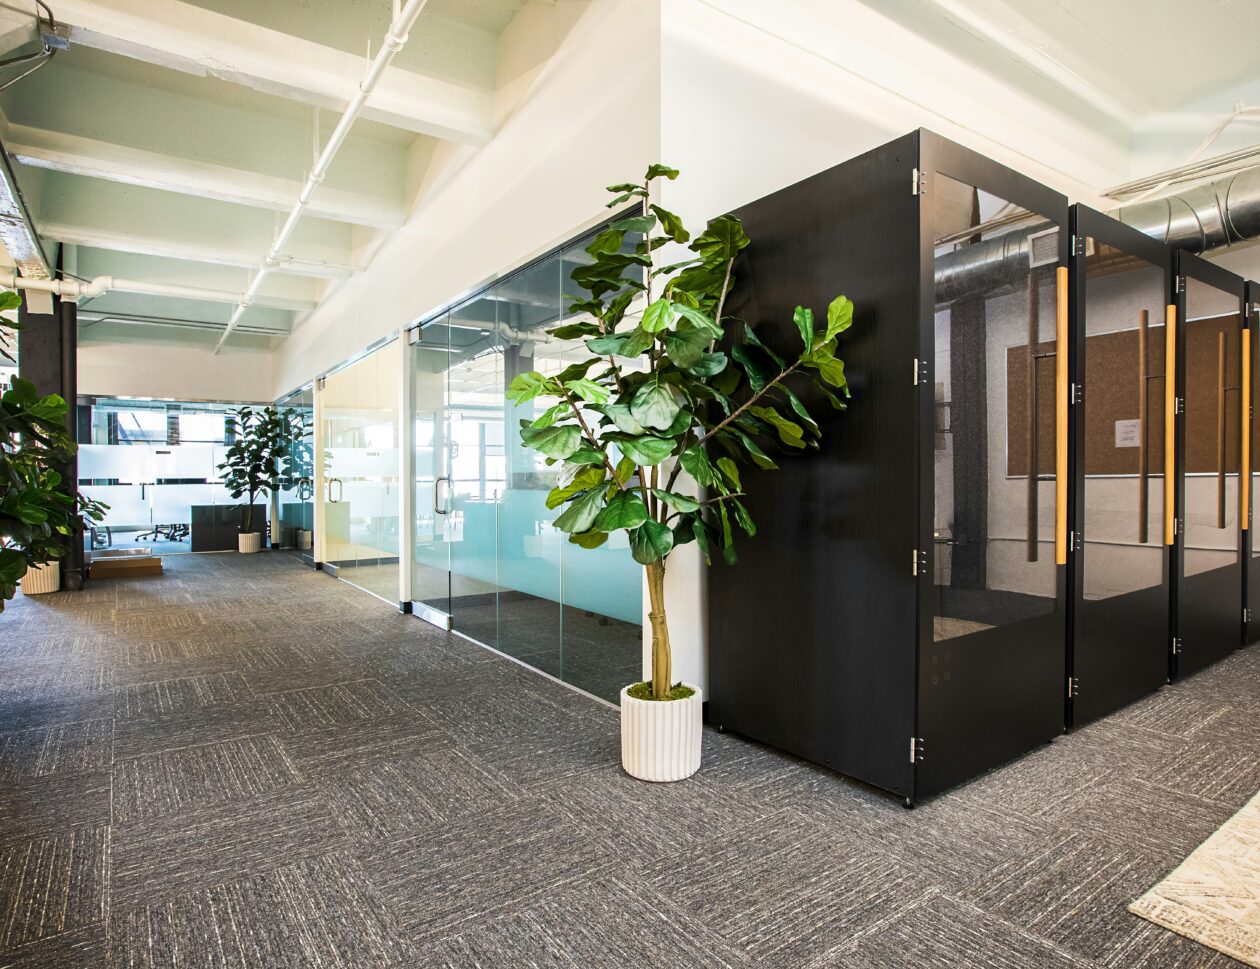 Biuro z rośliną na środku pokoju.